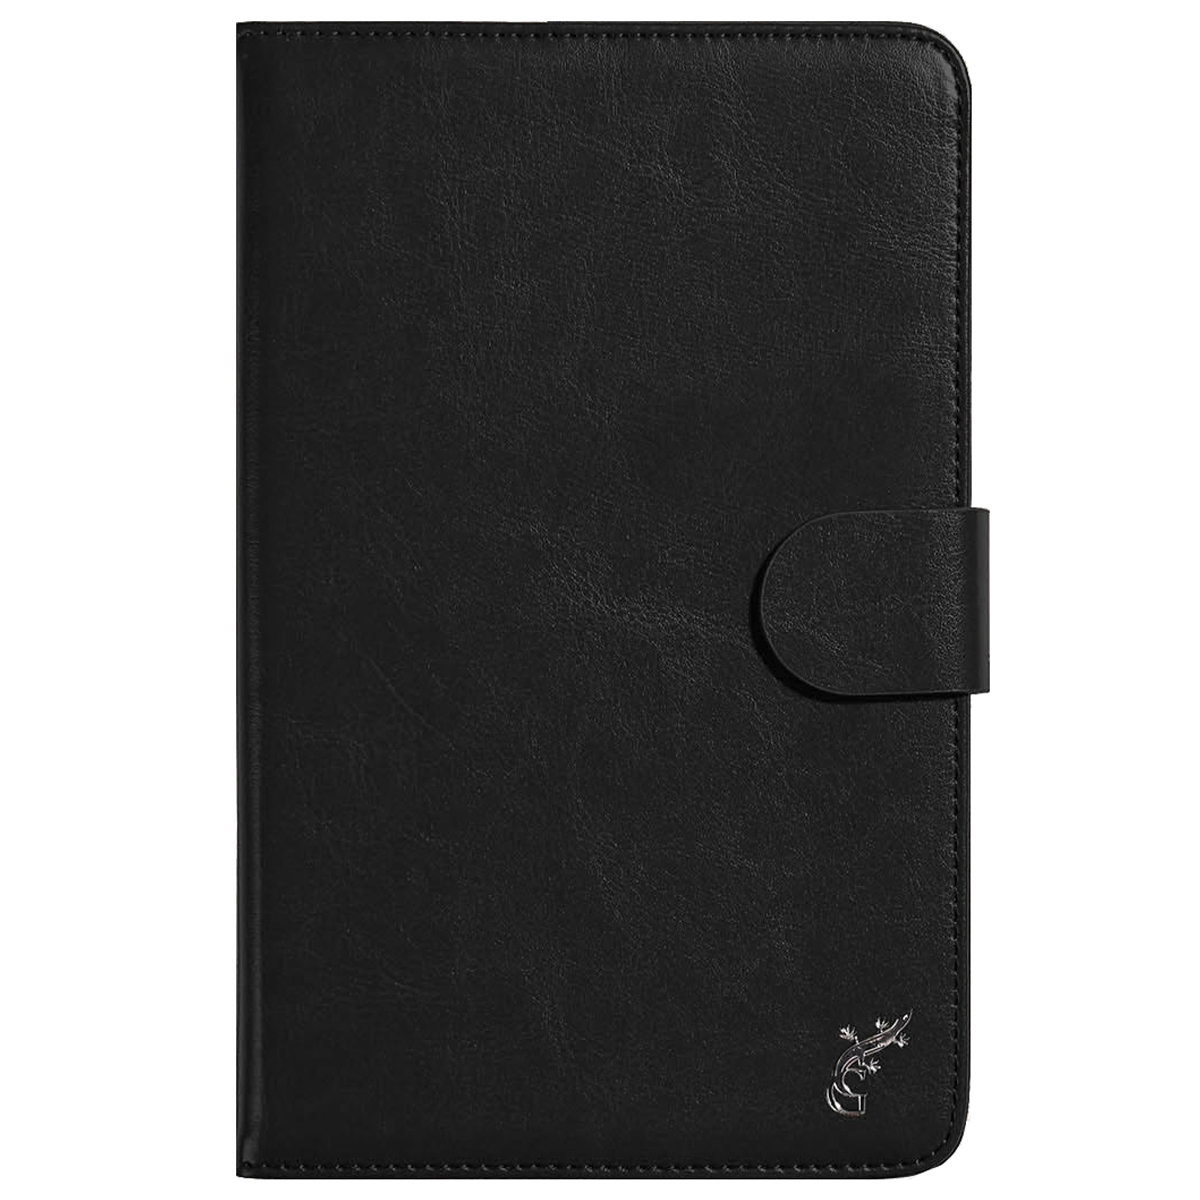 Универсальный чехол G-Case Business для планшетов 7 дюймов, черный